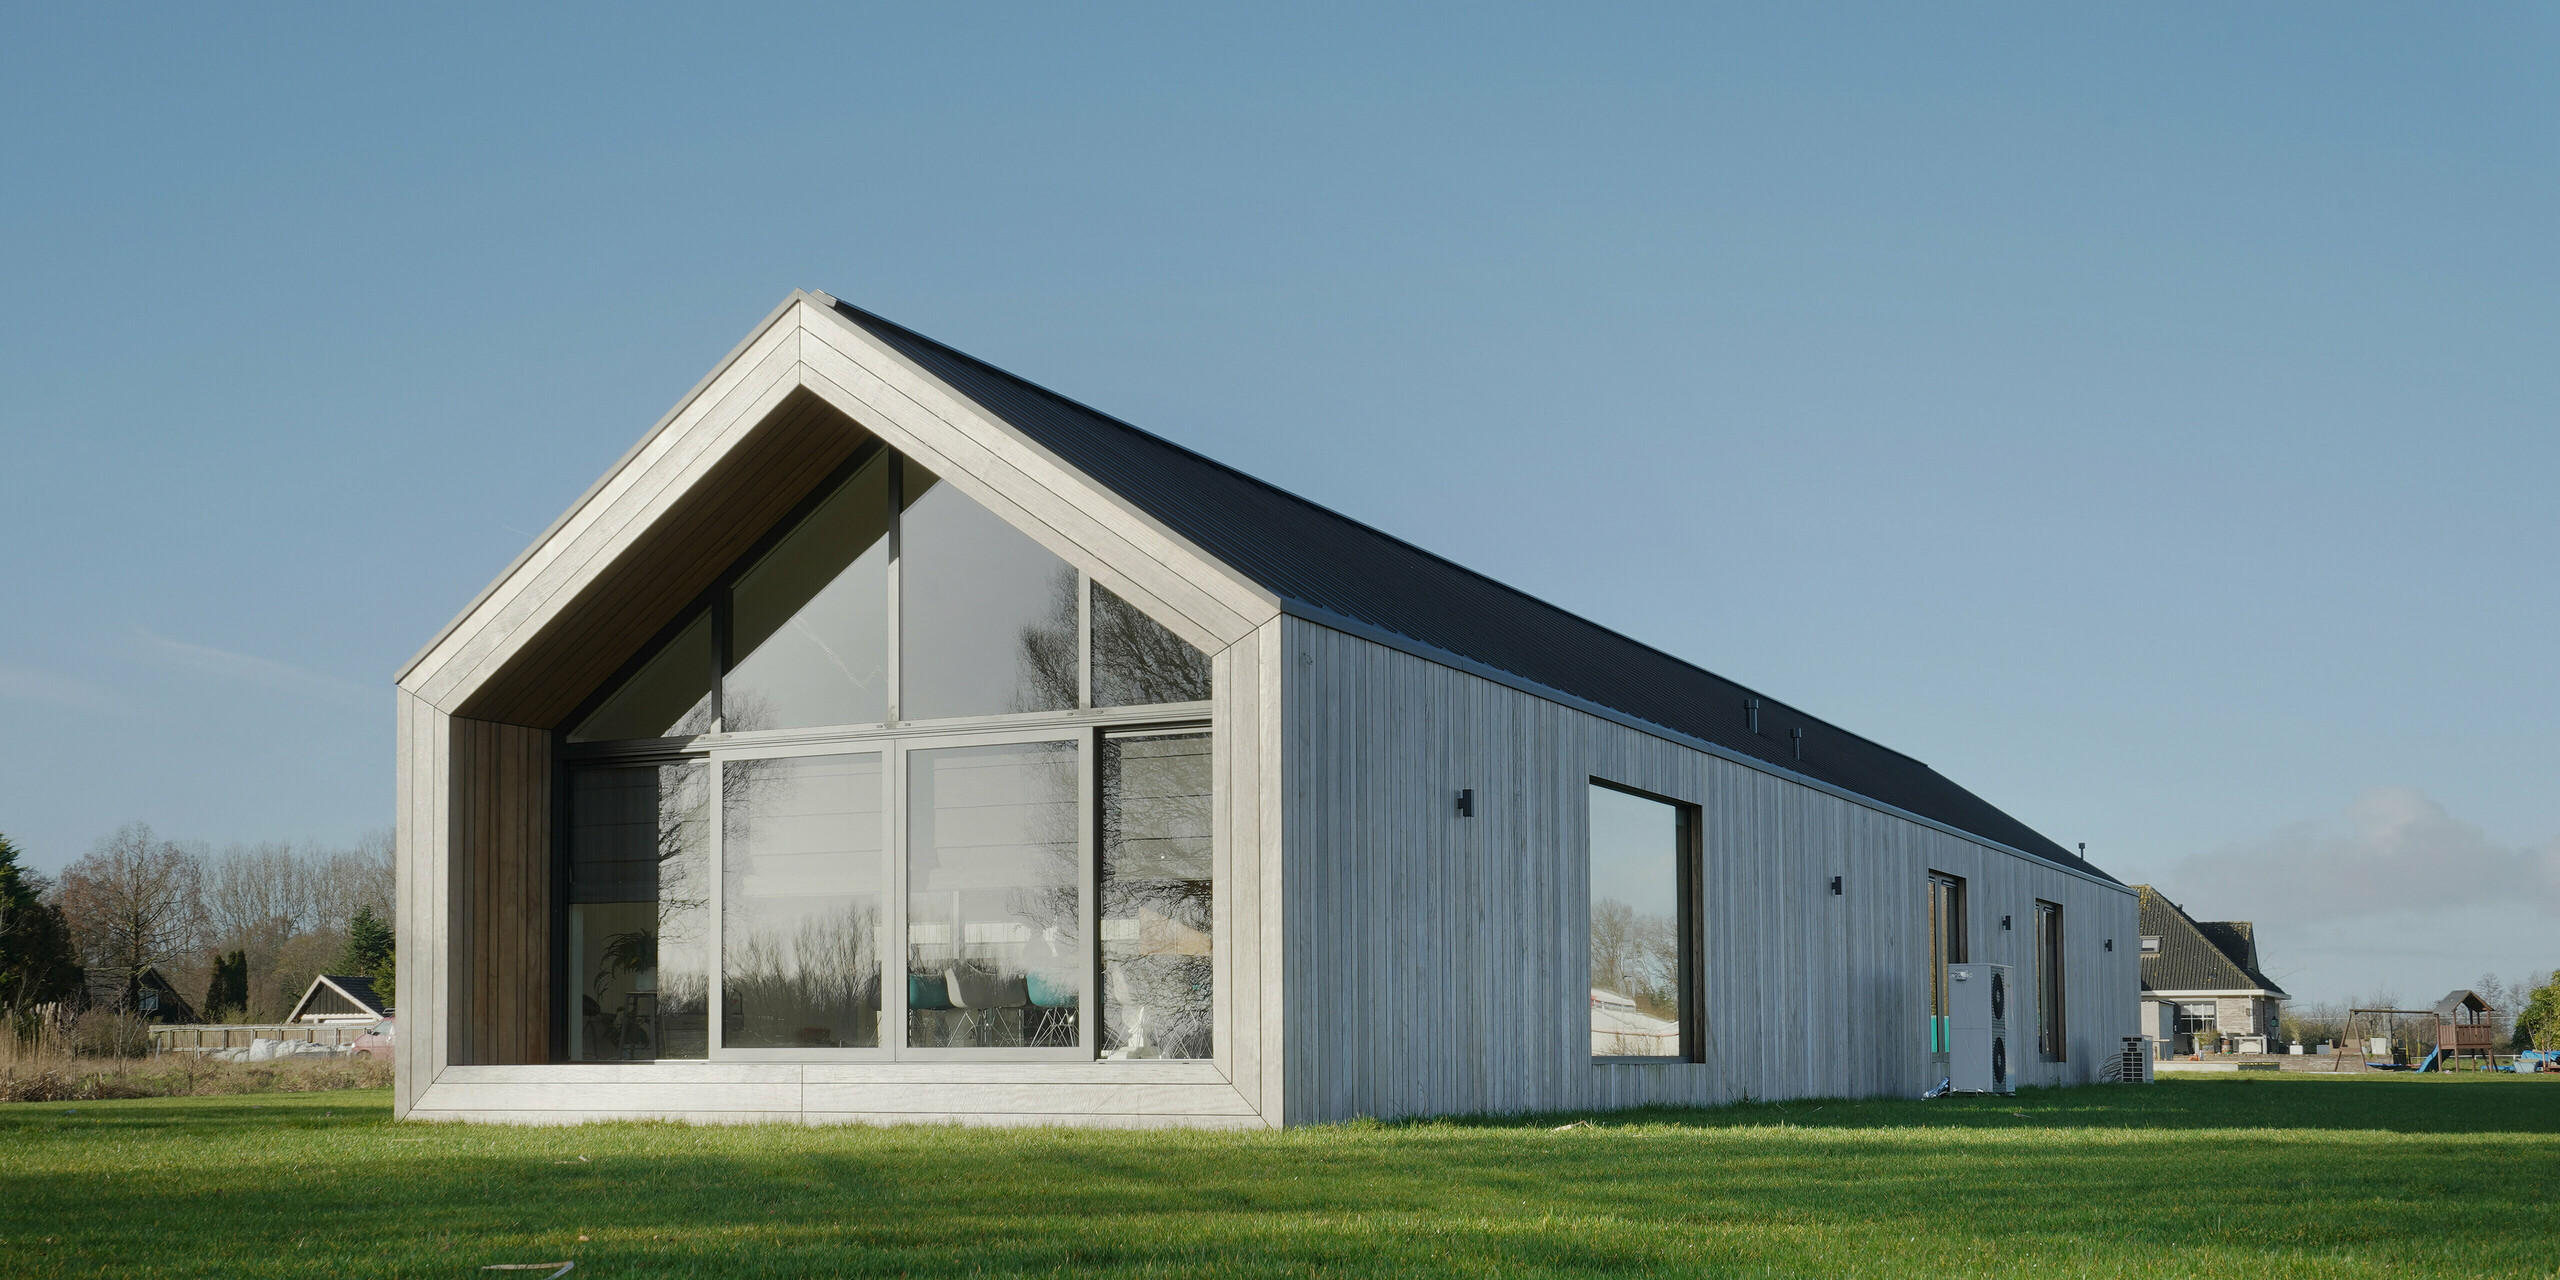 Modernes Einfamilienhaus im Design einer klassischen Scheune mit PREFALZ Dach in Uithoorn, Niederlande. Die minimalistische Architektur kombiniert großzügige Glasfronten mit einer langlebigen und witterungsbeständigen Aluminiumbedachung von PREFA. Die natürliche Holzfassade ist die perfekte Ergänzung an der Gebäudehülle. Das Satteldach verleiht dem Haus einen klassischen Look, während die klaren Linien und das hochwertige Blechdach für Langlebigkeit und zeitlose Eleganz sorgen. Ideal für innovative Bauprojekte, die auf Ästhetik und Qualität setzen.